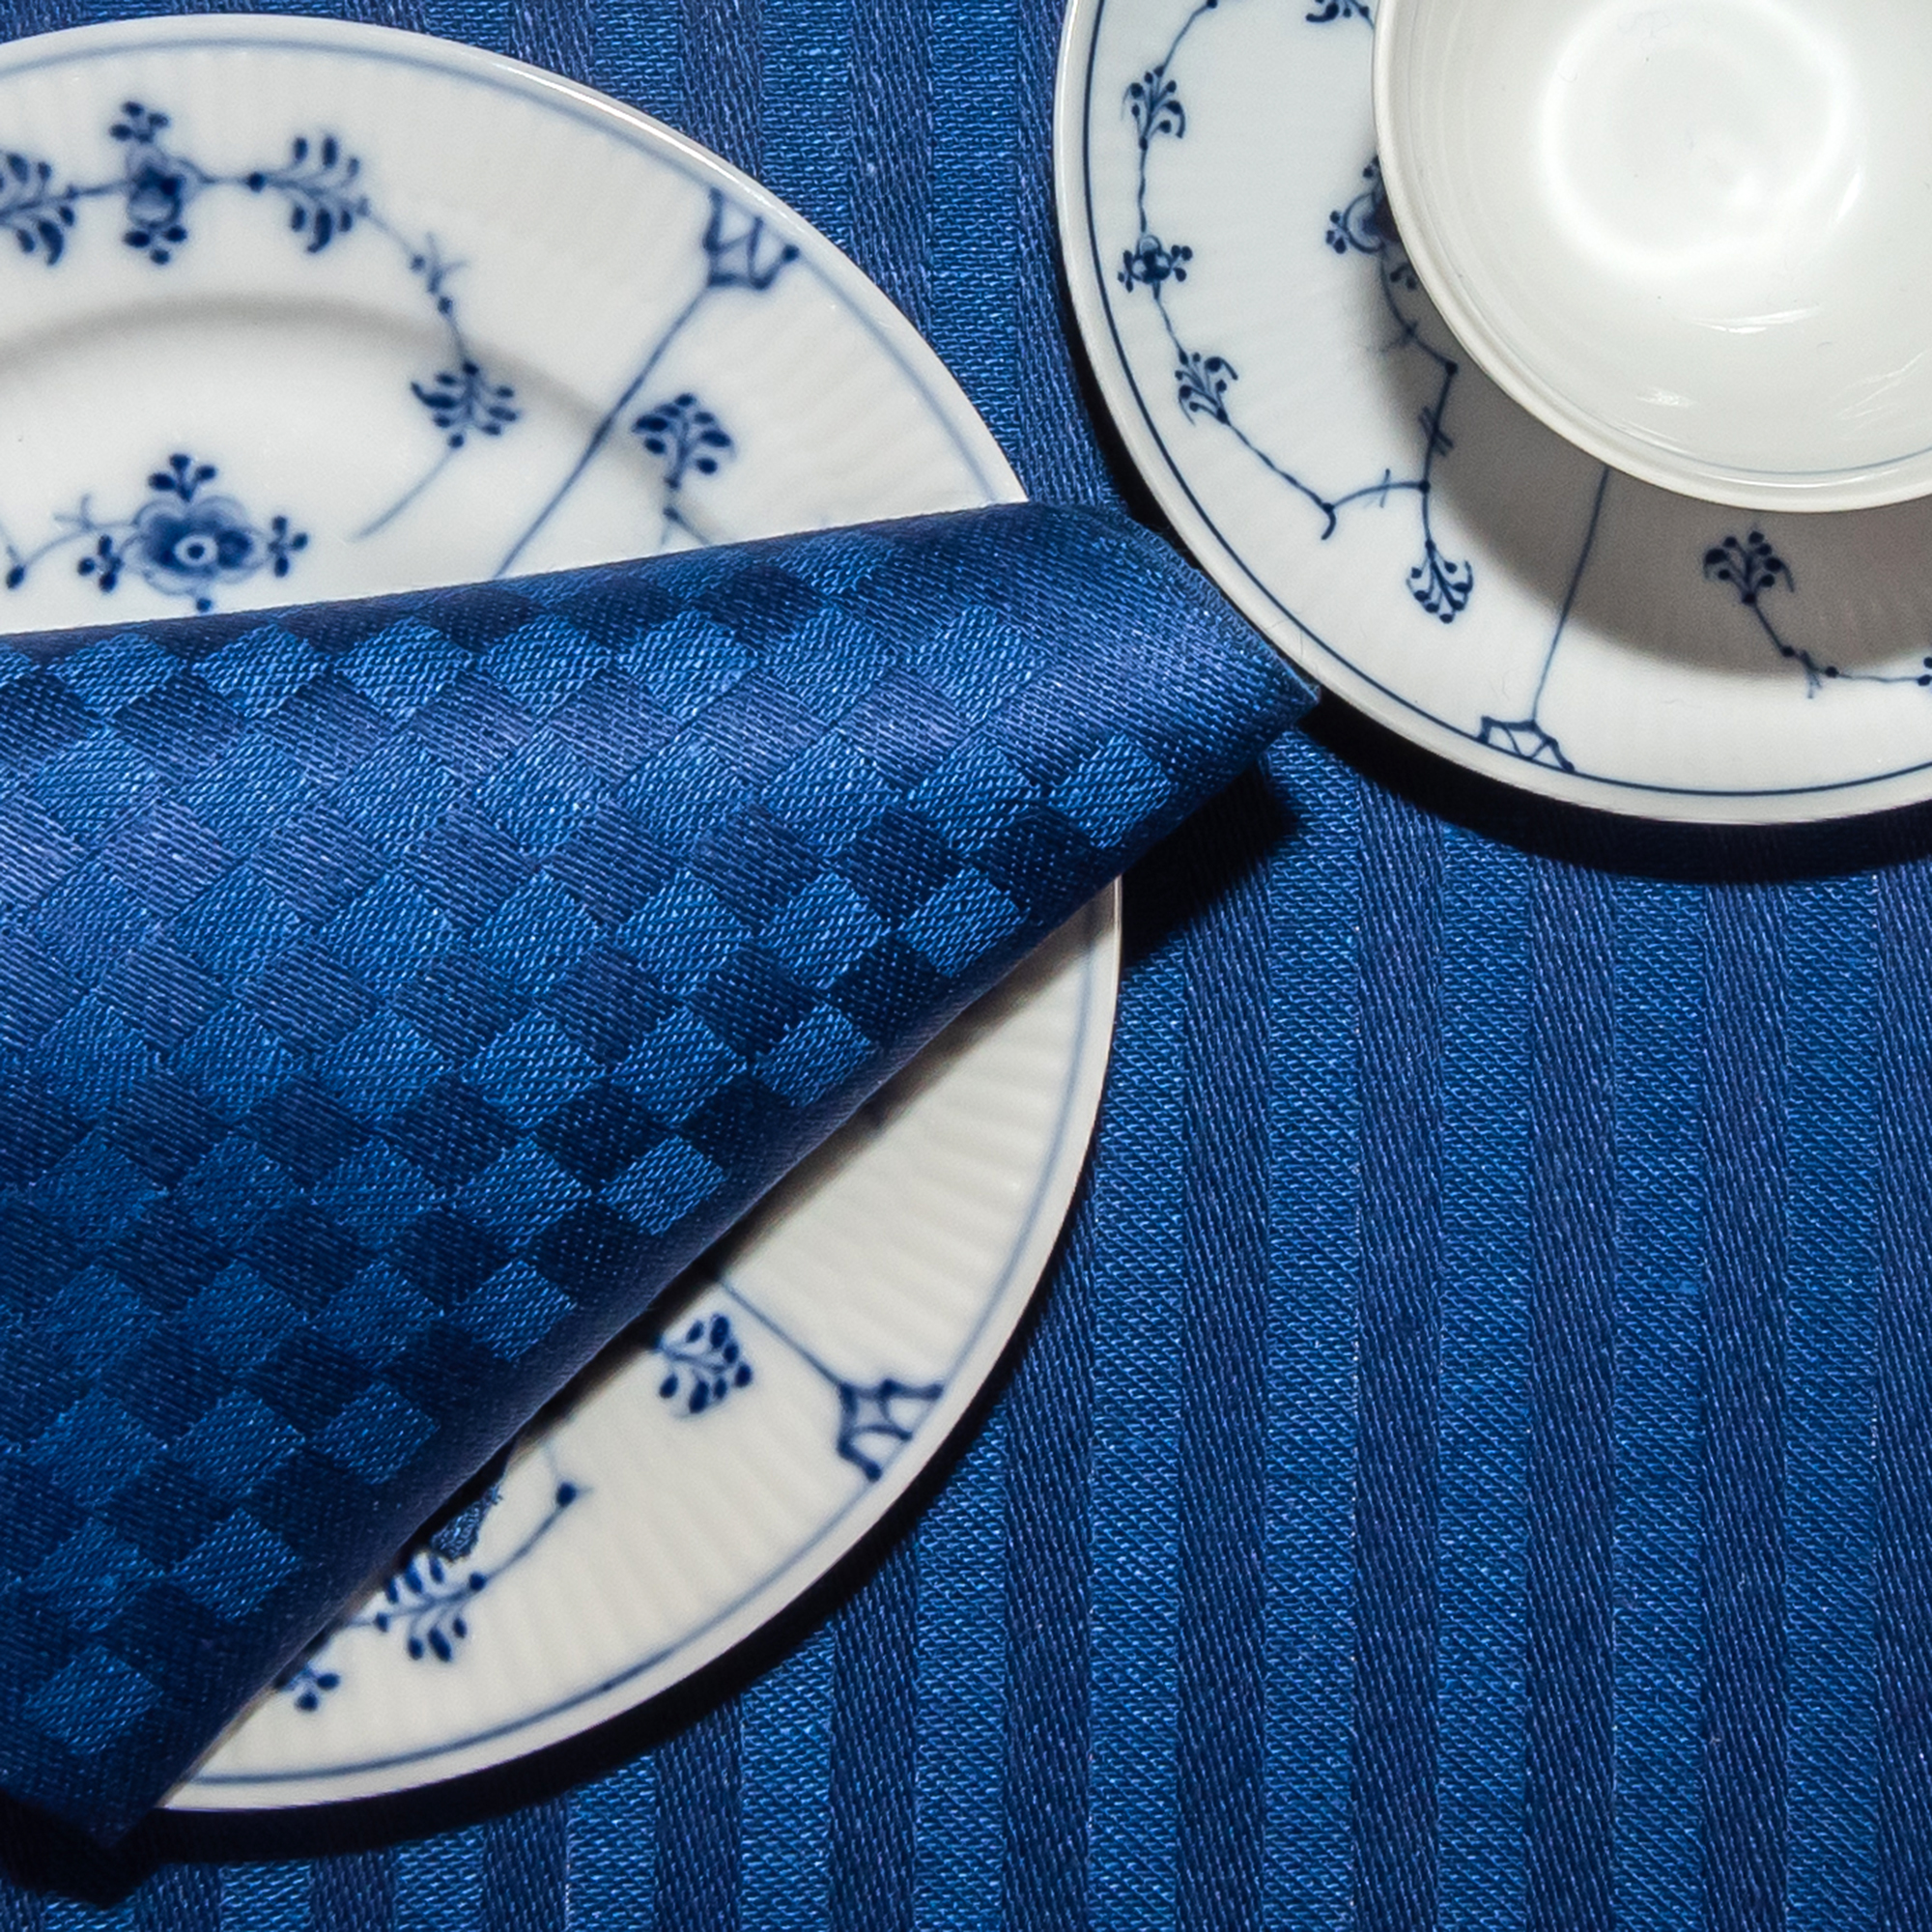 Blå ordern linne servetter tabletter på tallrik med bestick Klässbols Linneväveri Hanne Vedel bordsdukning tillsammans med kaffe och vitt och blått porslin